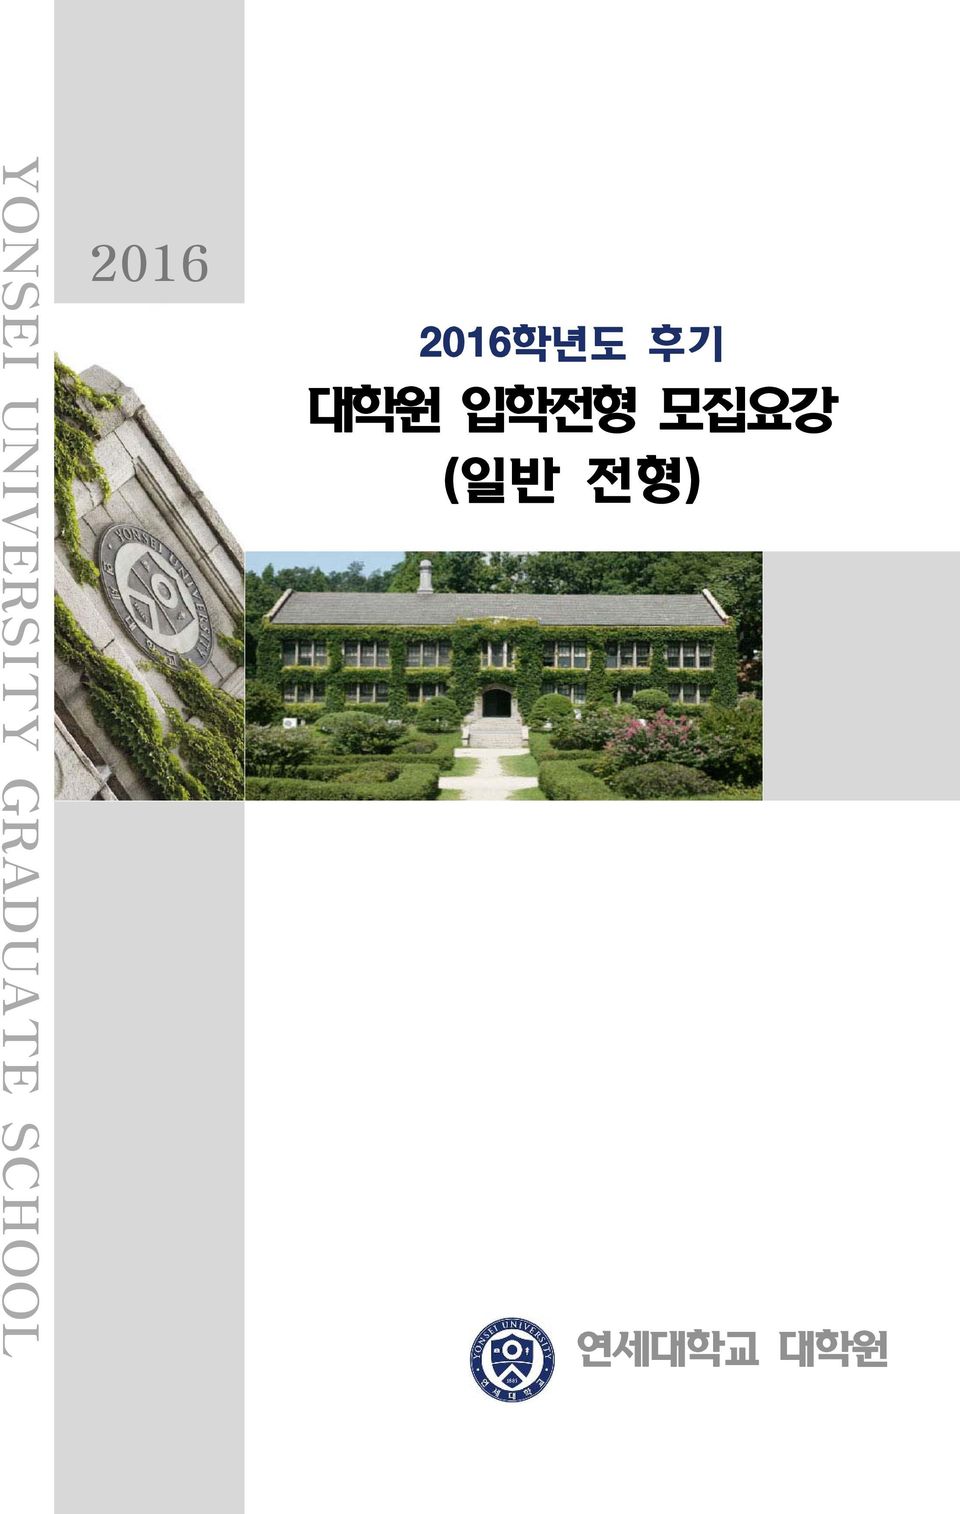 2016 2016년도 후기 원